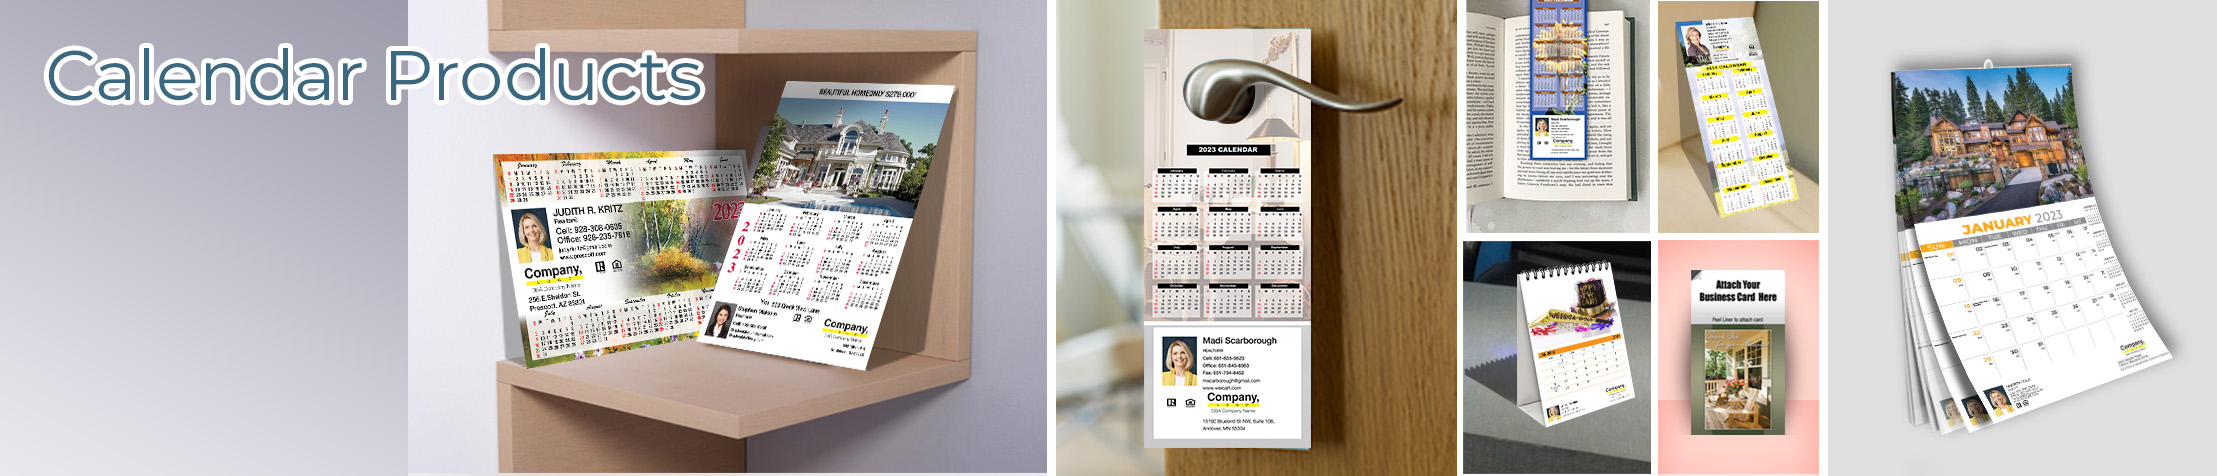 Weichert Real Estate Calendar Products - Weichert  2019 calendars, magnets, door hangers, bookmarks, tear away note pads | BestPrintBuy.com